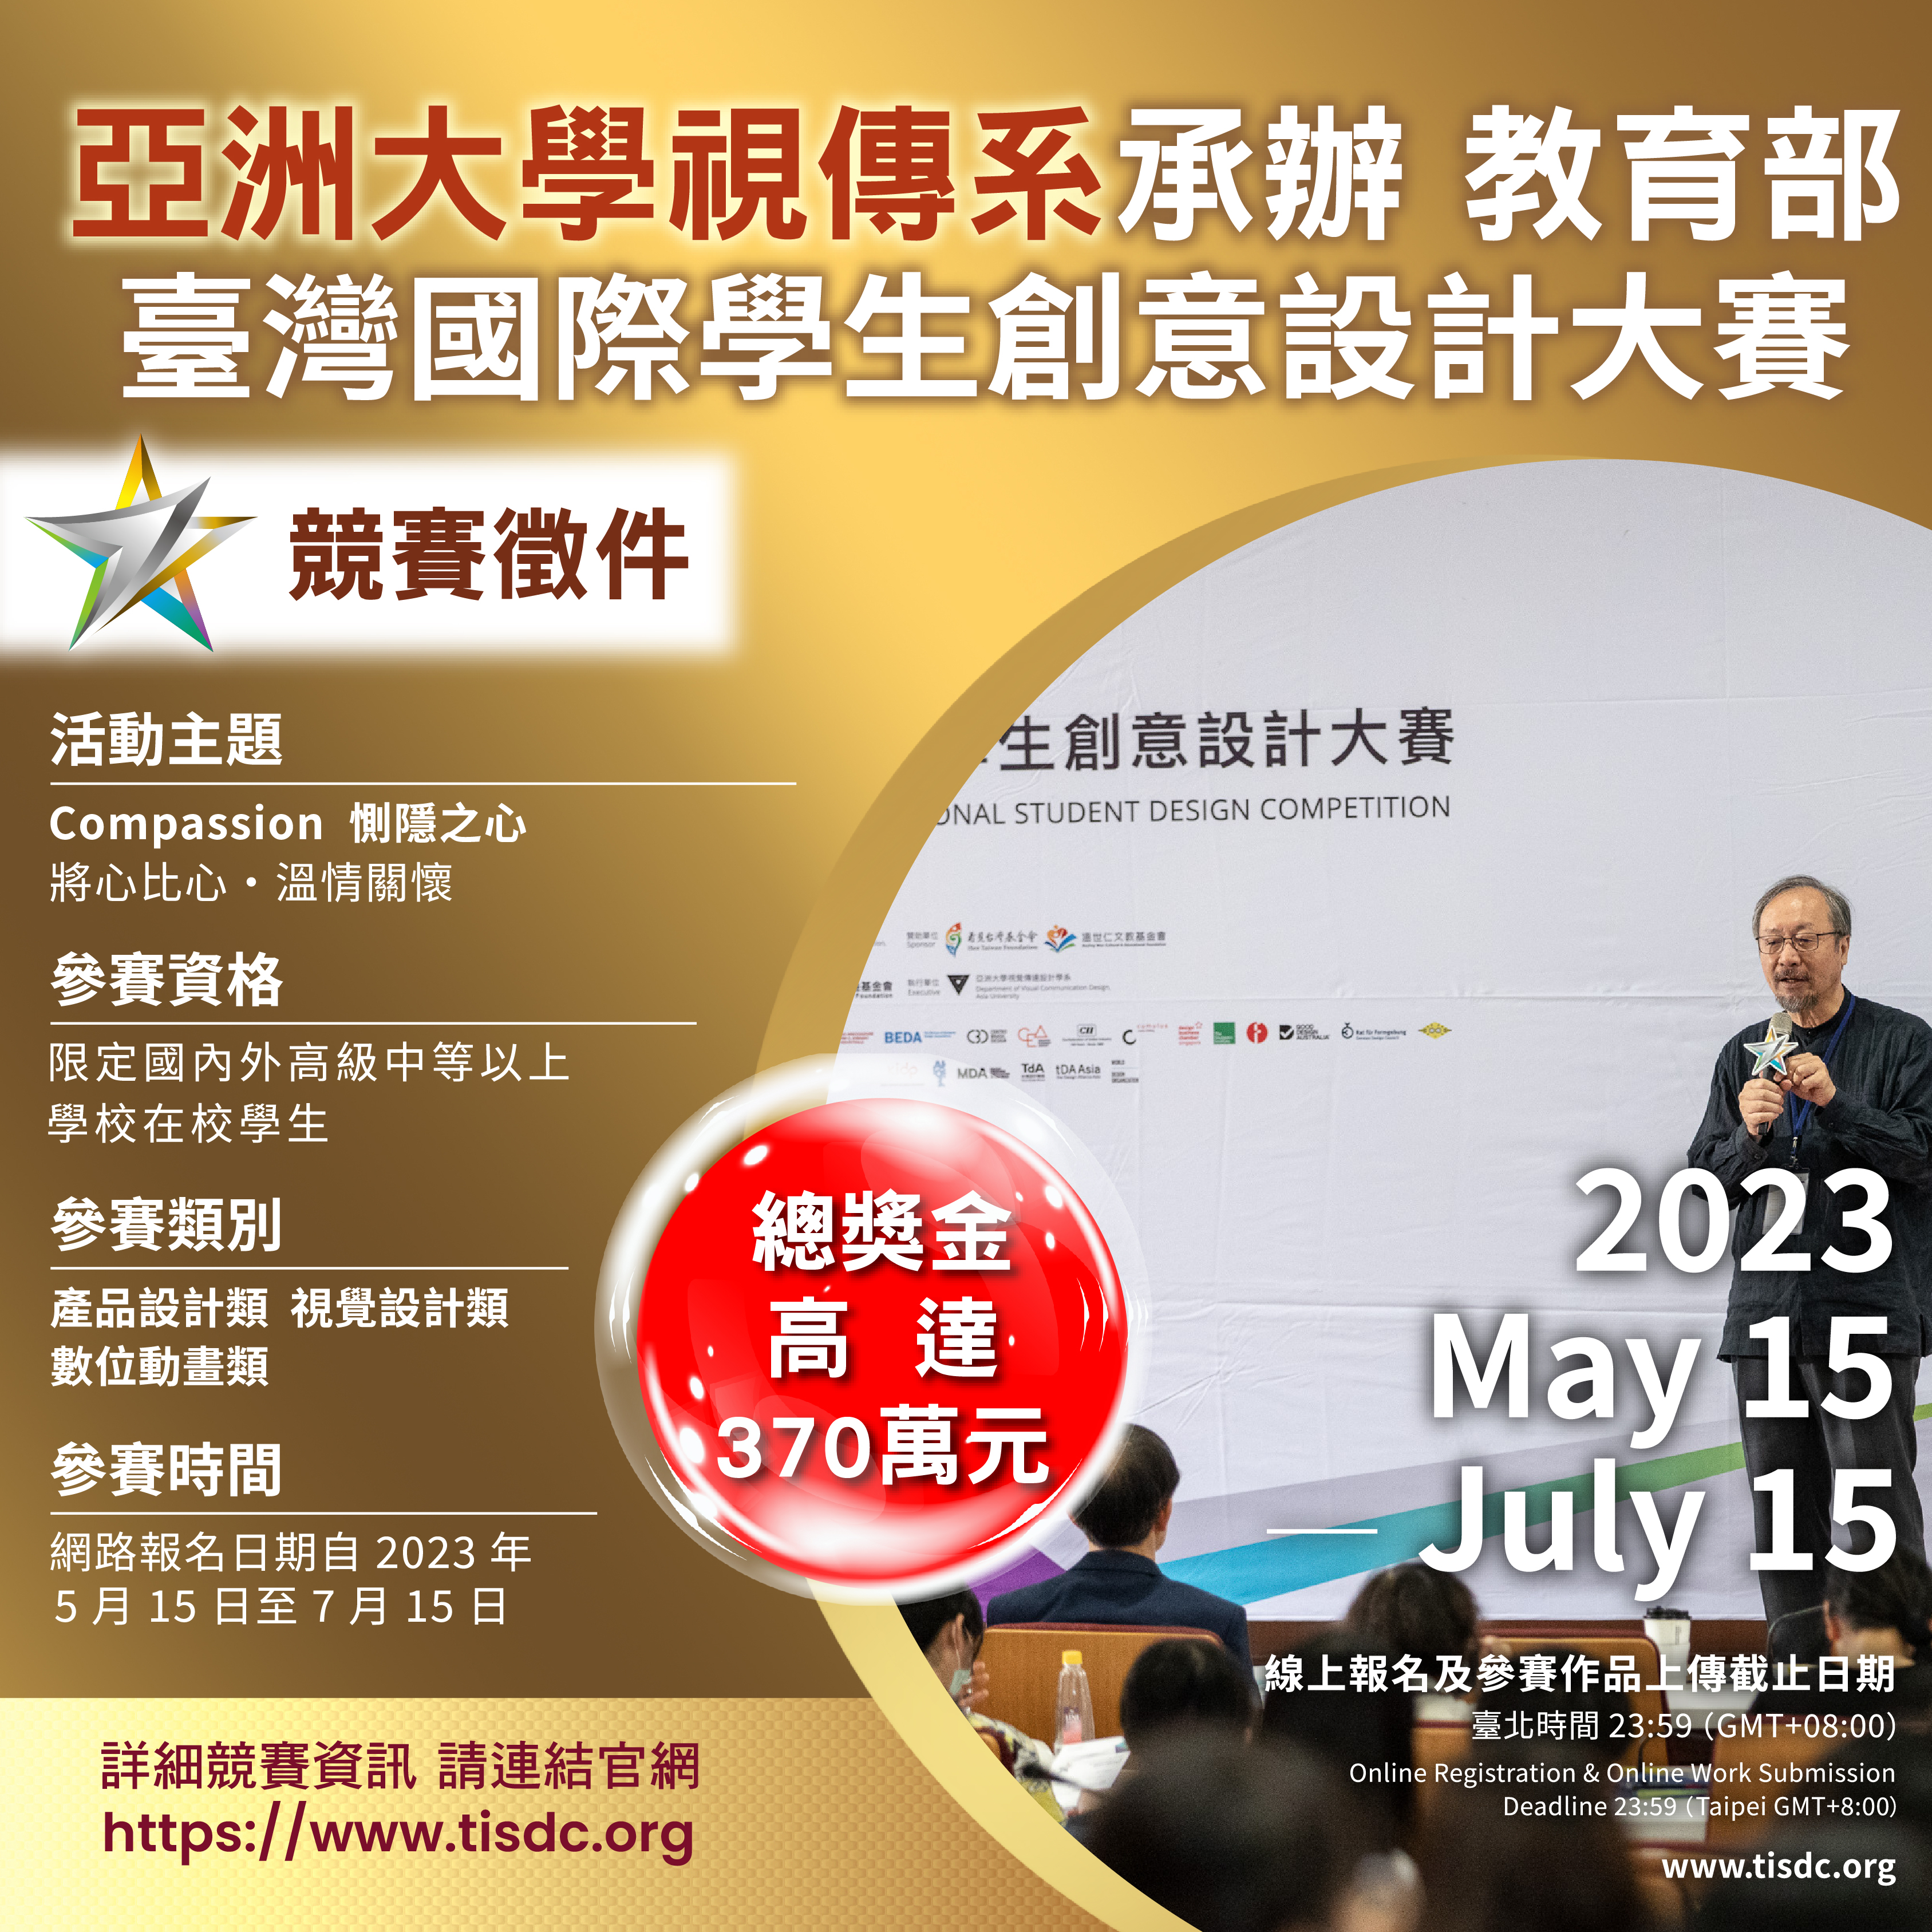 2023年「TISDC臺灣國際學生創意設計大賽」競賽資訊